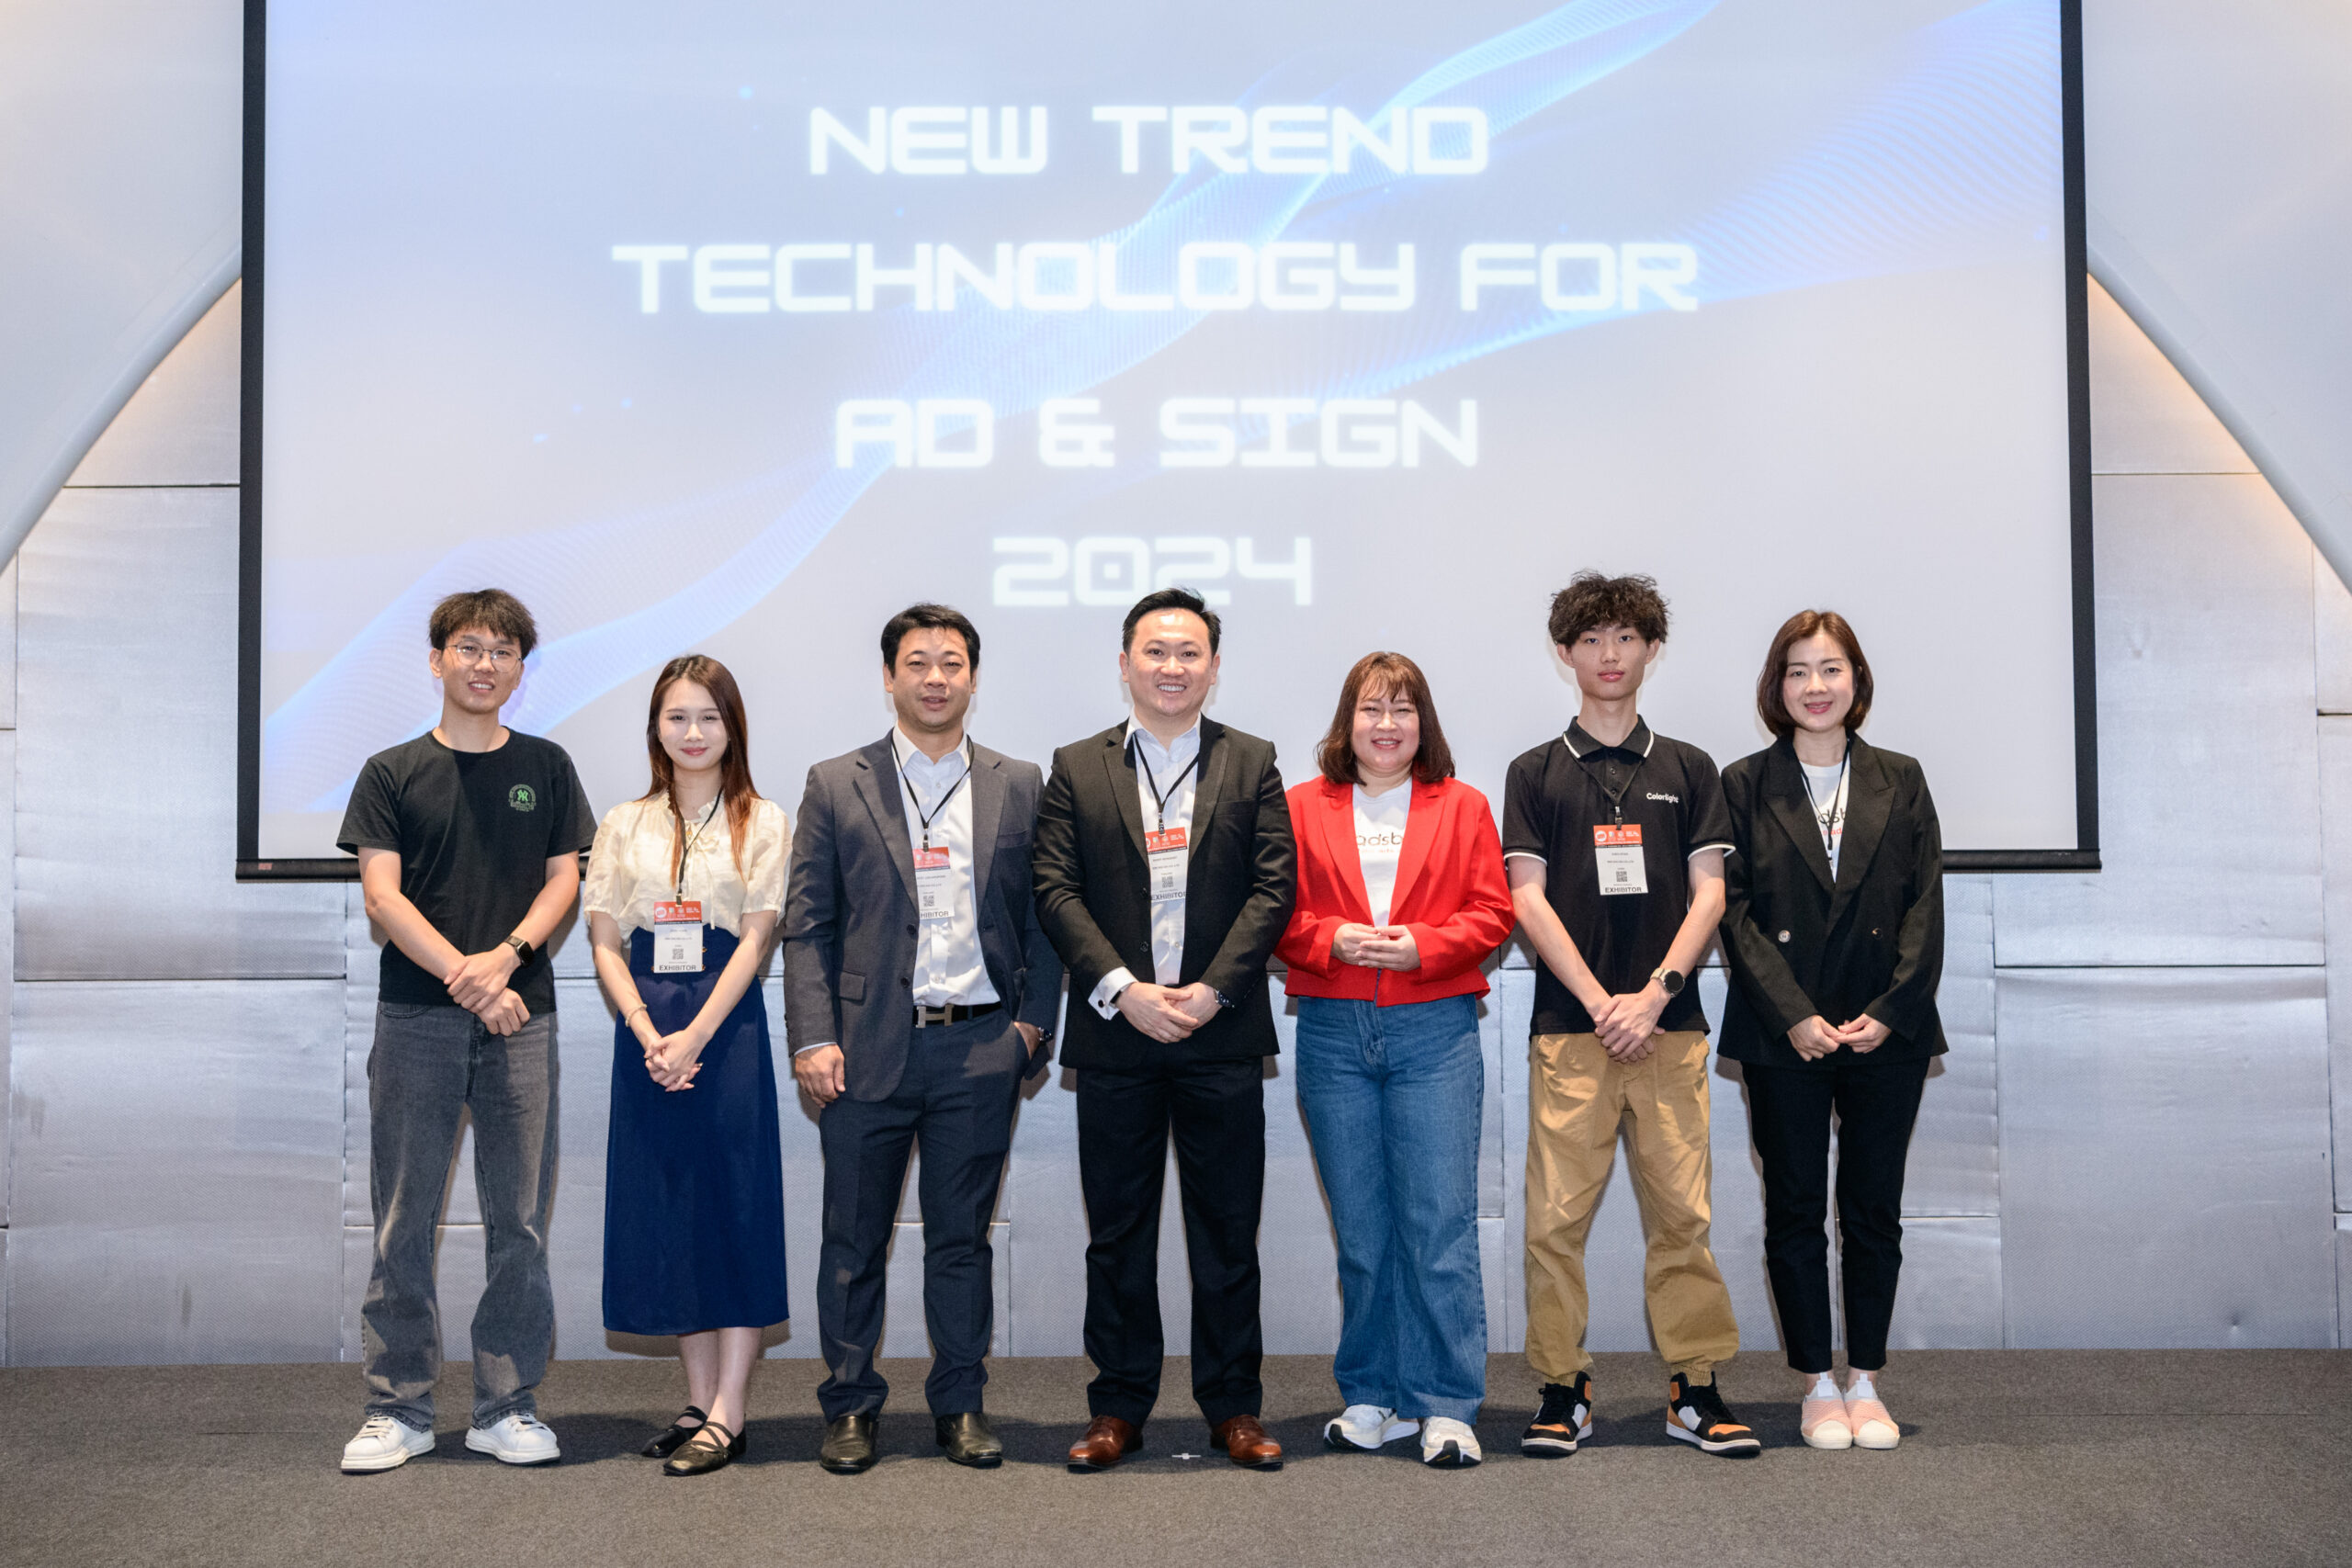 “WIN WIN ING” ประกาศดีลเสริมแกร่ง จับมือ 3 ยักษ์ใหญ่ LED จีน ยกระดับมาตราฐานการให้บริการด้านเทคโนโลยี LED ในประเทศไทย